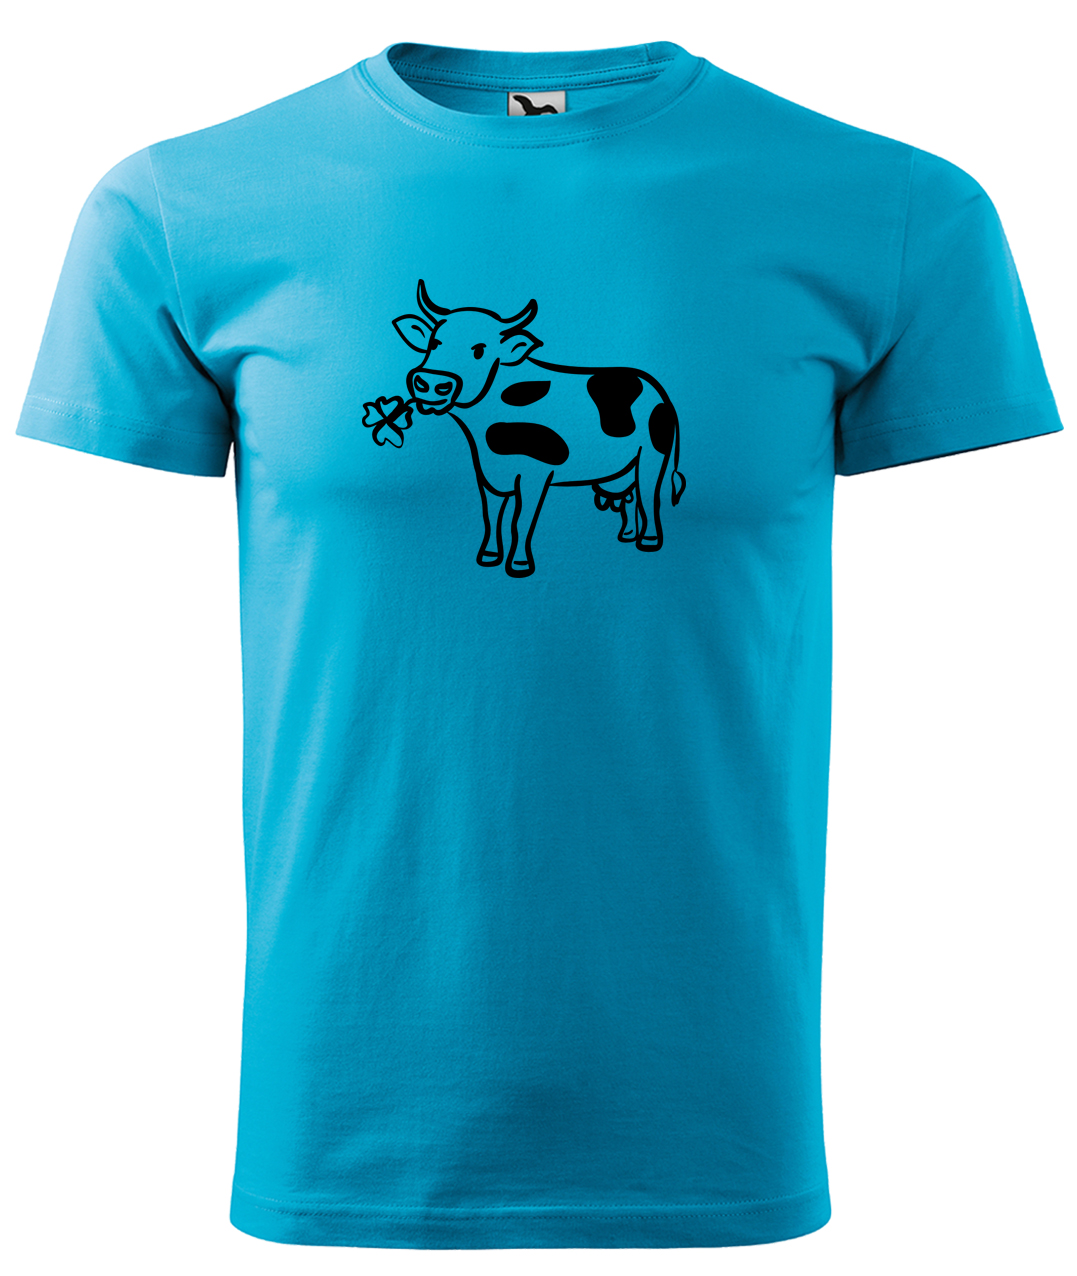 Dětské tričko s krávou - Kravička a jetel Velikost: 4 roky / 110 cm, Barva: Tyrkysová (44), Délka rukávu: Krátký rukáv